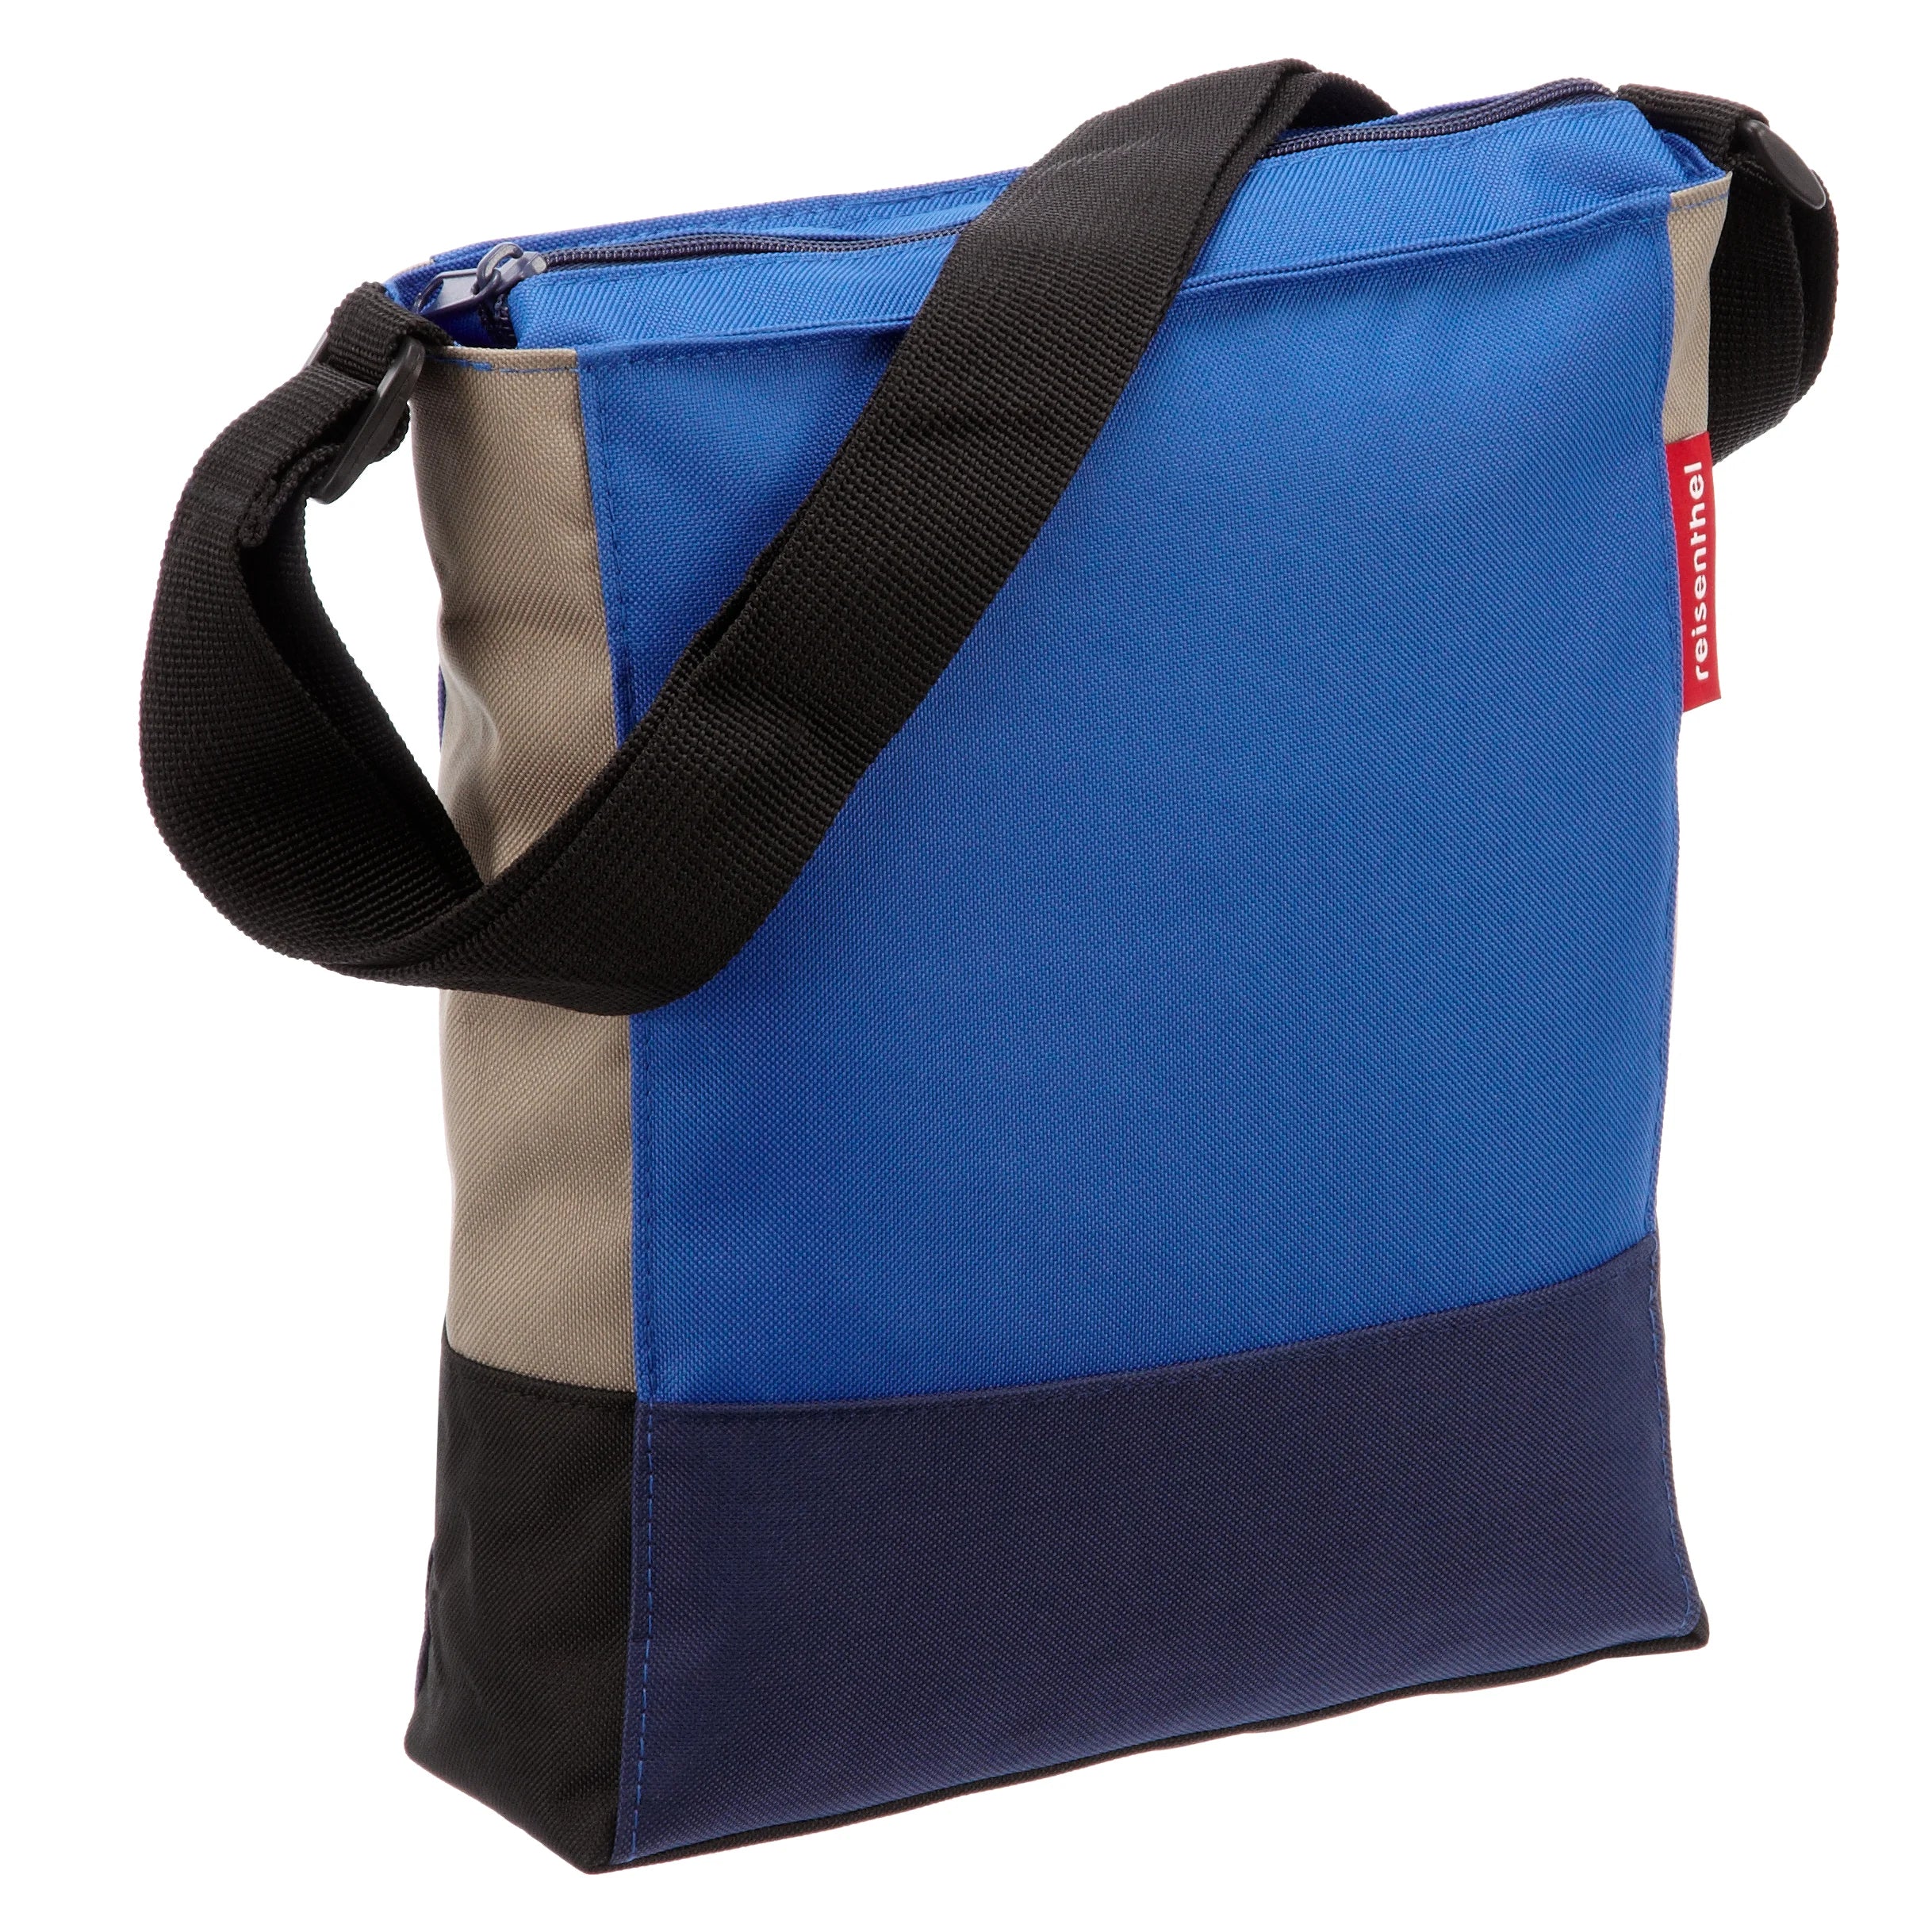 Reisenthel Shopping Shoulderbag shoulder bag 29 cm - signature navy